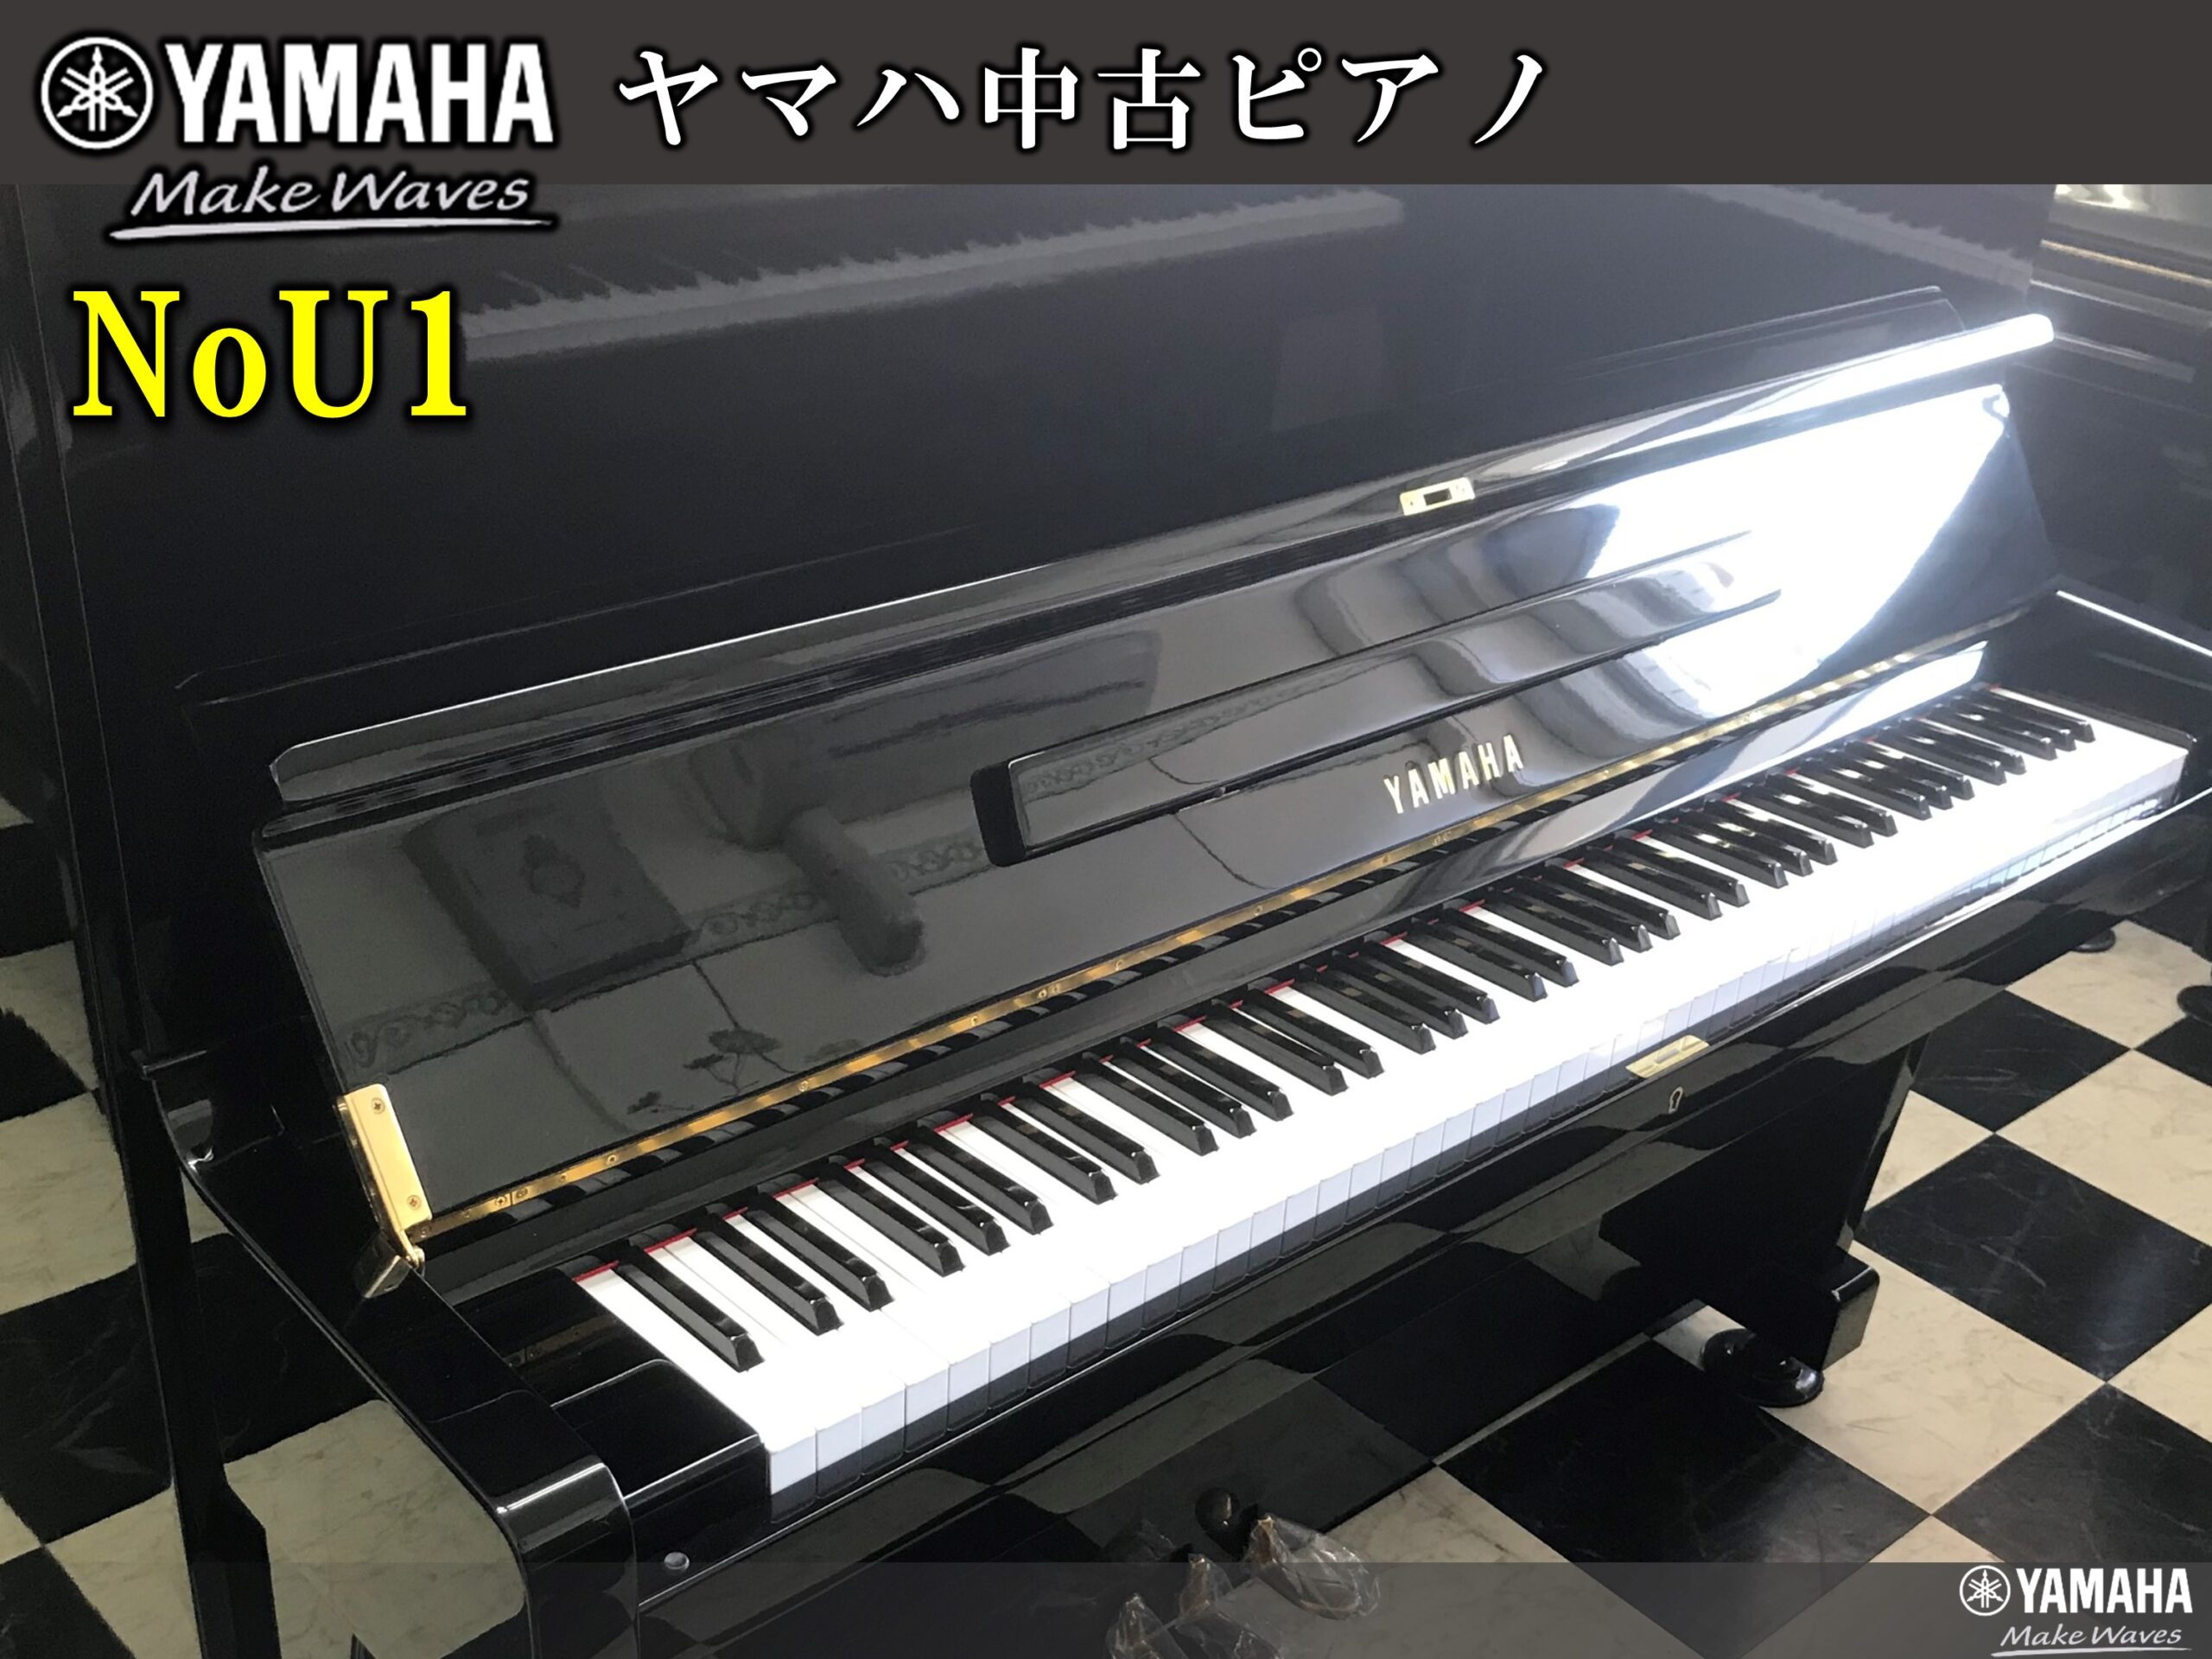 ヤマハ中古ピアノ NO,U1 | 福岡のヤマハ中古ピアノなら株式会社フカノ